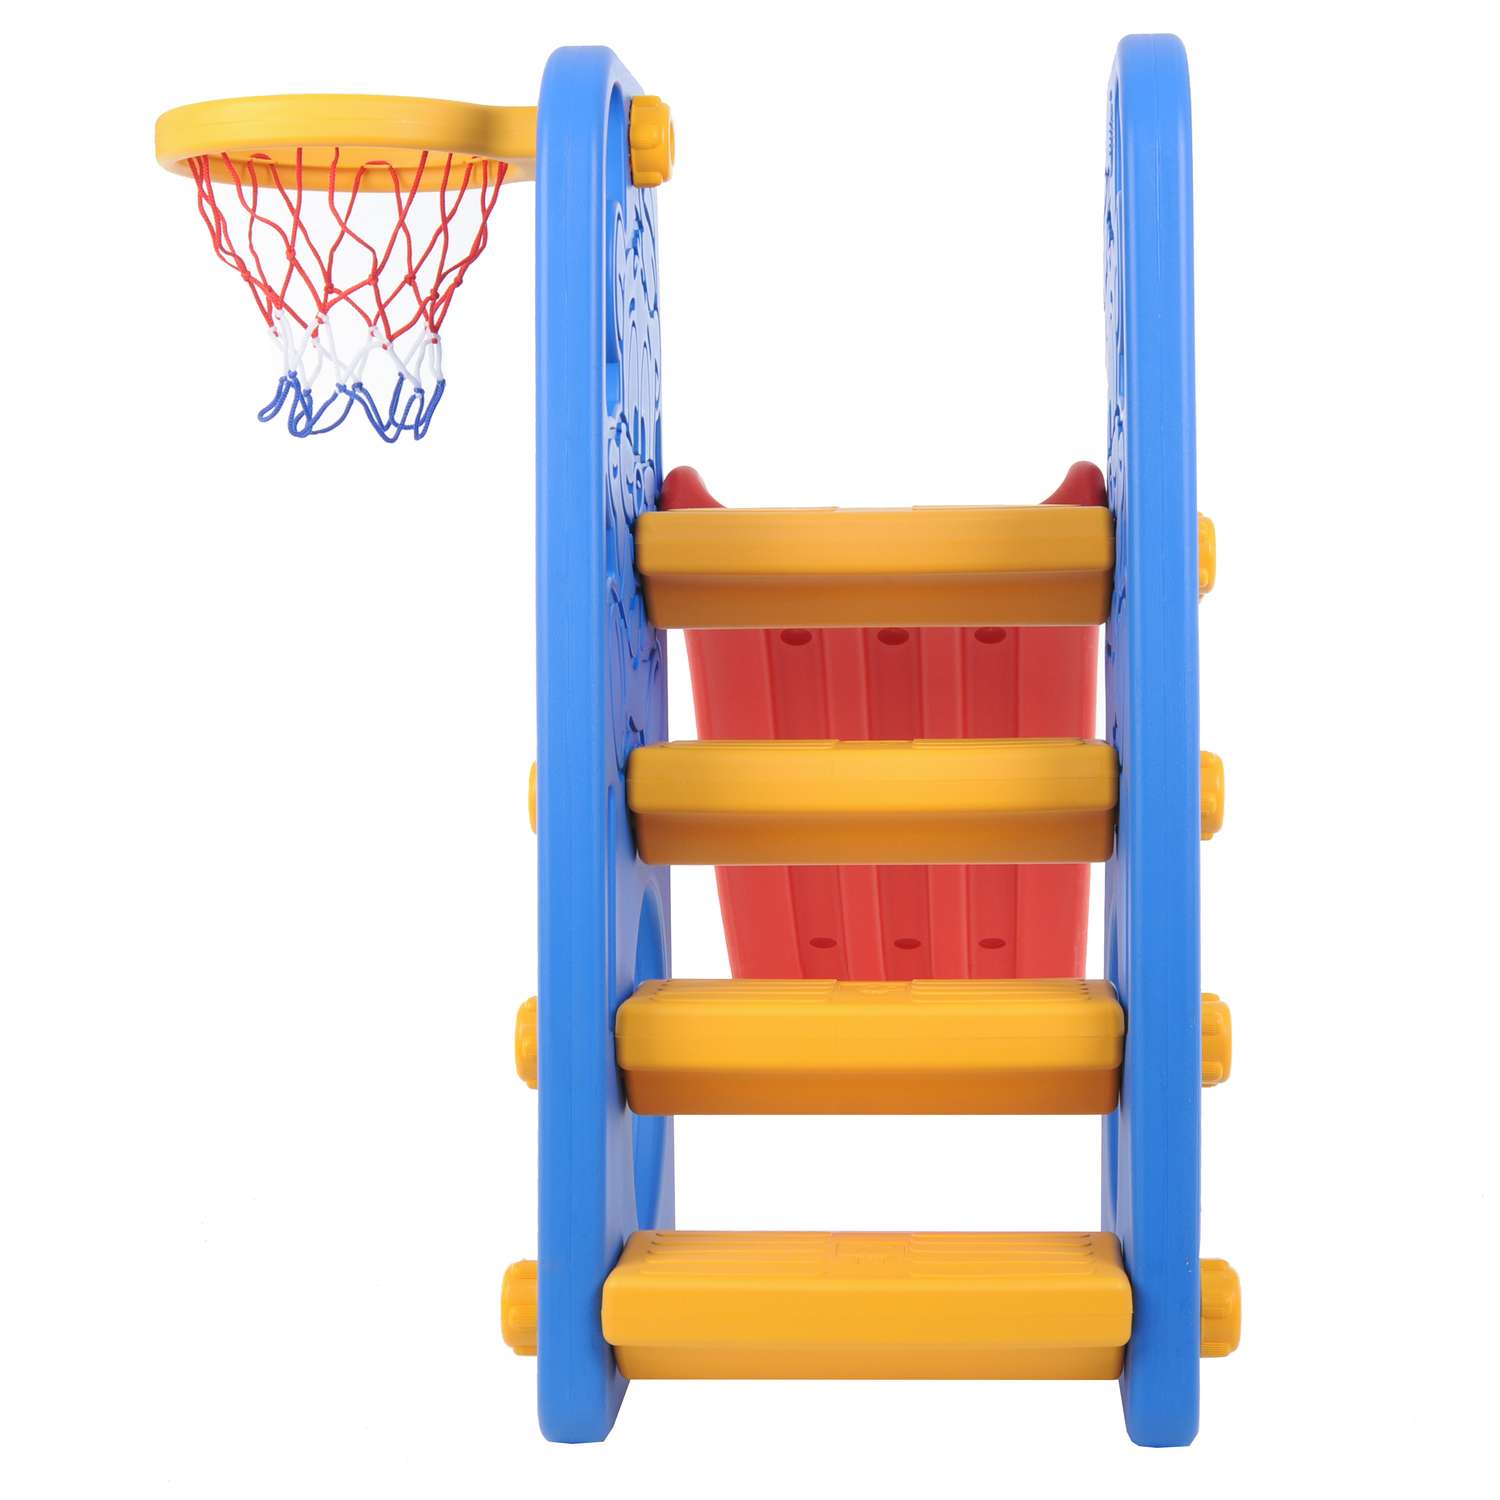 Центр игровой Edu Play Горка Друзья с баскетбольным кольцом Синий-Красный-Желтый WJ-312 - фото 3